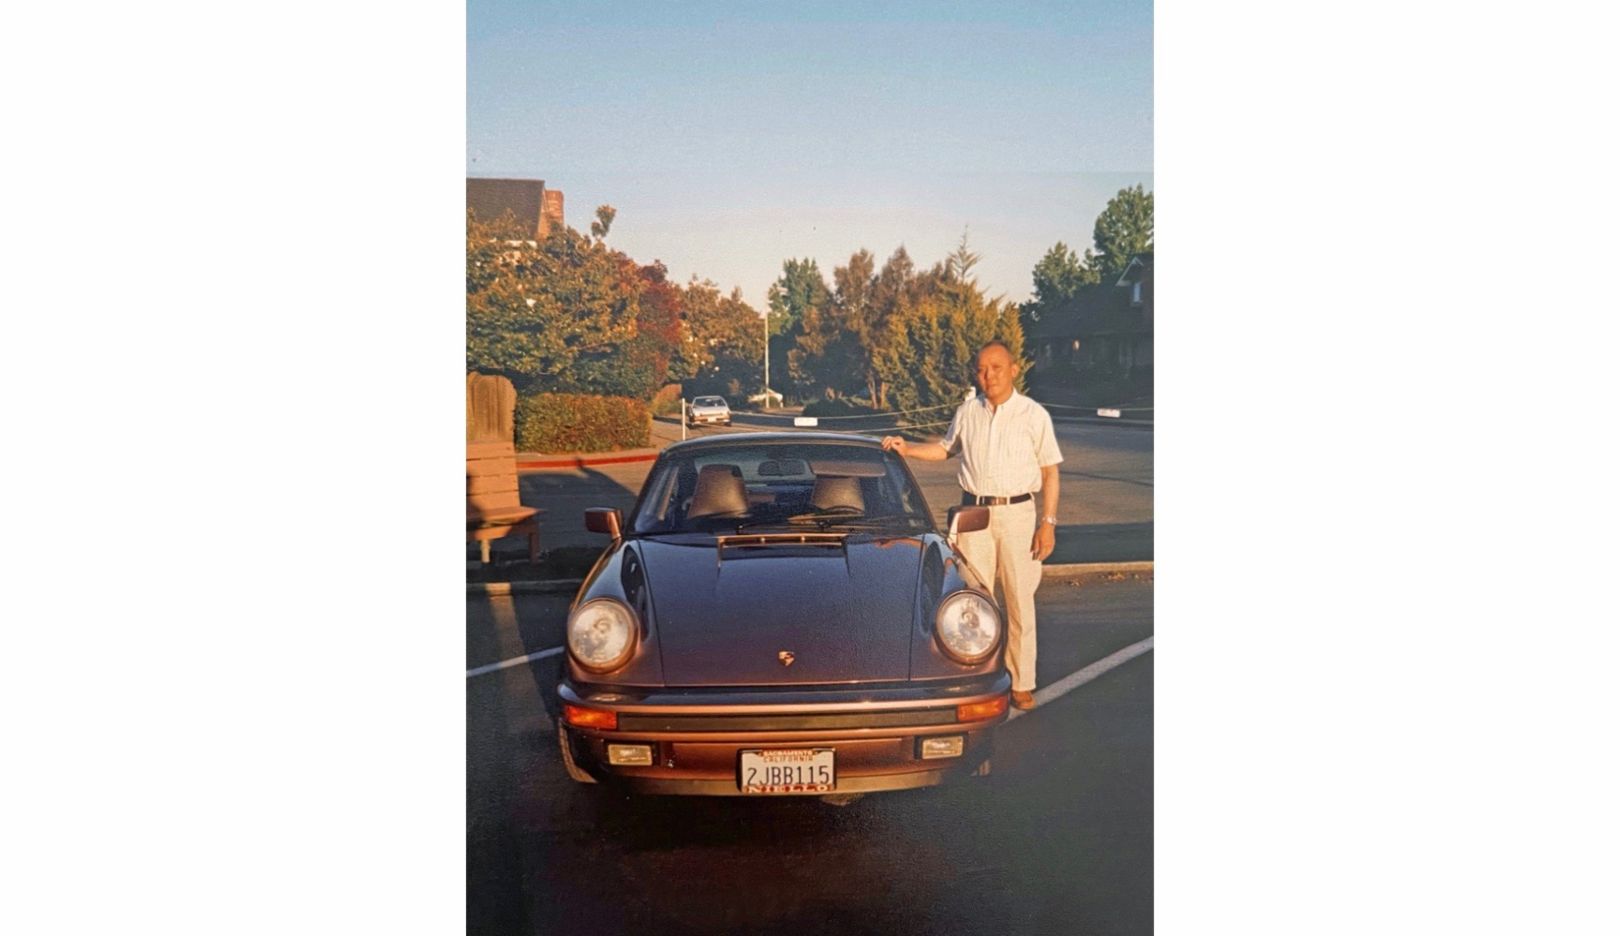 Джордж Ву купил свой первый Porsche 911, когда вышел на пенсию. Его сыну, актеру Дэниэлу Ву, в то время было 12 лет, и отец разрешил ему выбрать цвет — мальчик выбрал редкий цвет красной смородины Cassis Red.